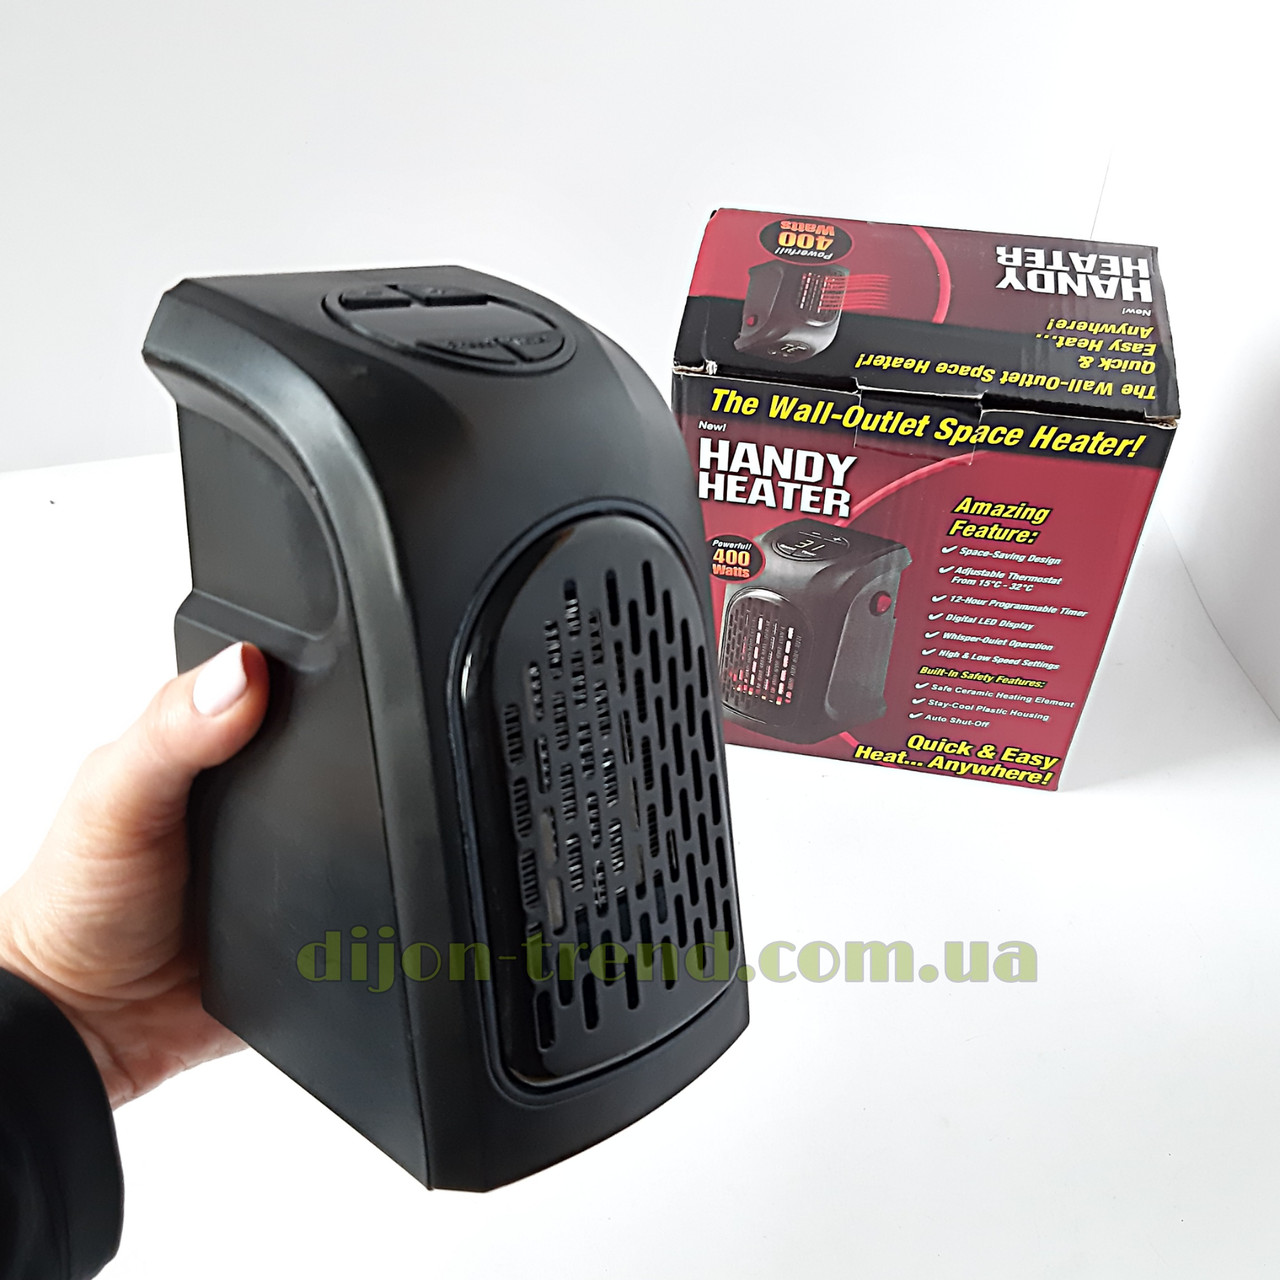 Термовентилятор handy heater 400 Вт портативный мини обогреватель с регулировкой температуры и таймером